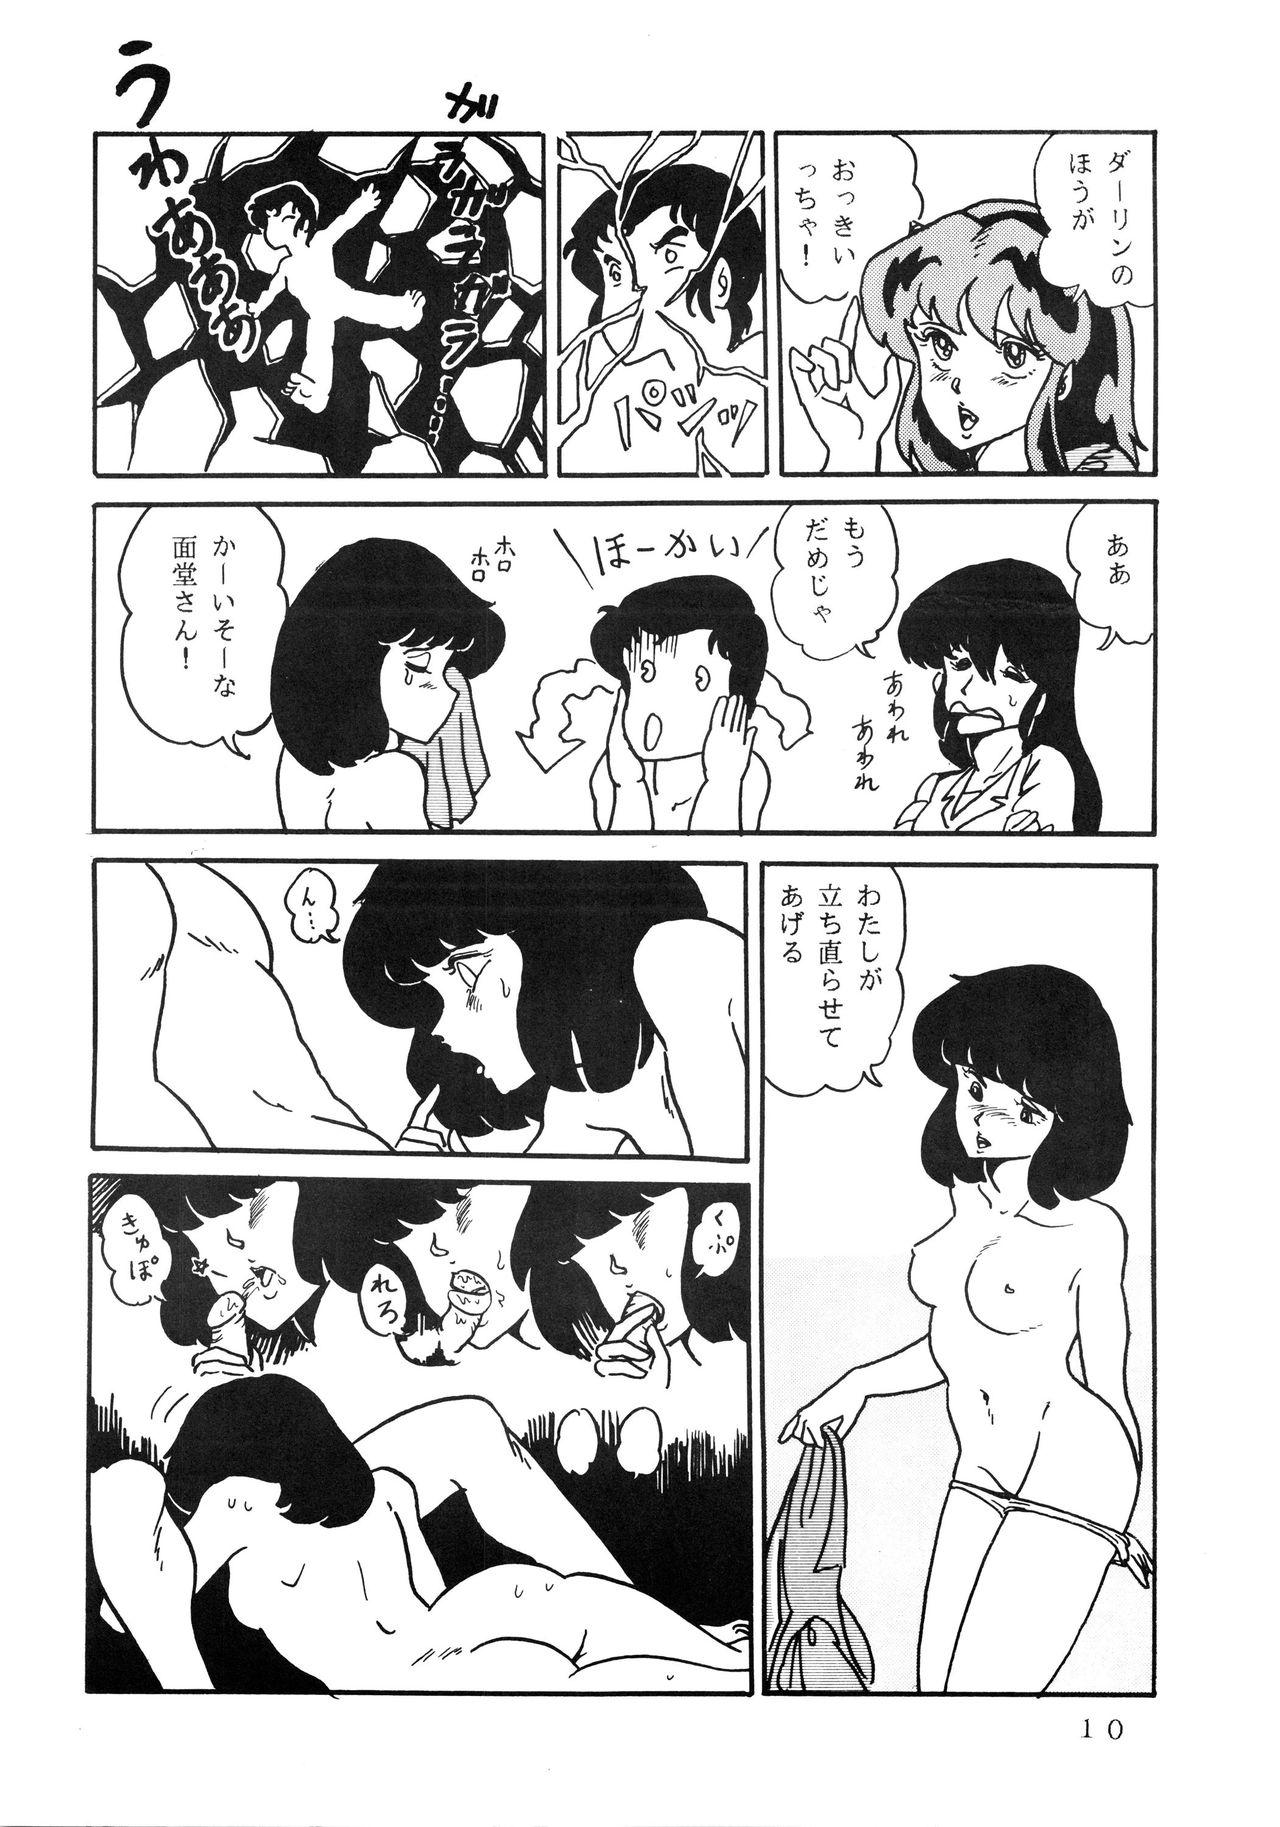 Tugging Shijou Saiaku no LUM 4 - Urusei yatsura Lez Fuck - Page 10